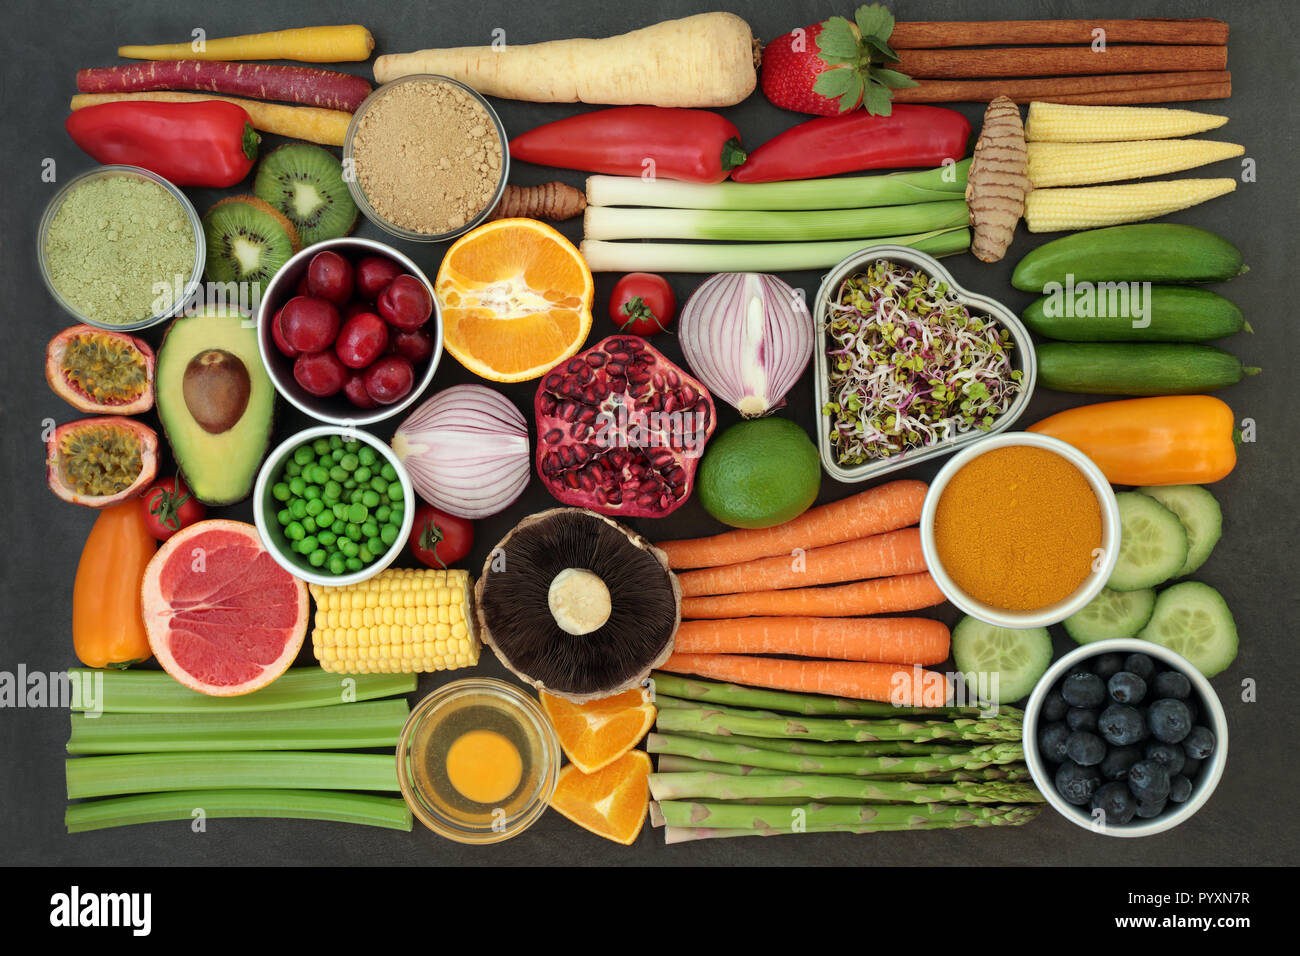 Gesundheit Nahrung für sauber essen Konzept mit frischem Obst, Gemüse, Milchprodukte, zu ergänzen, zu Pulver, Kräutern und Gewürzen. Stockfoto